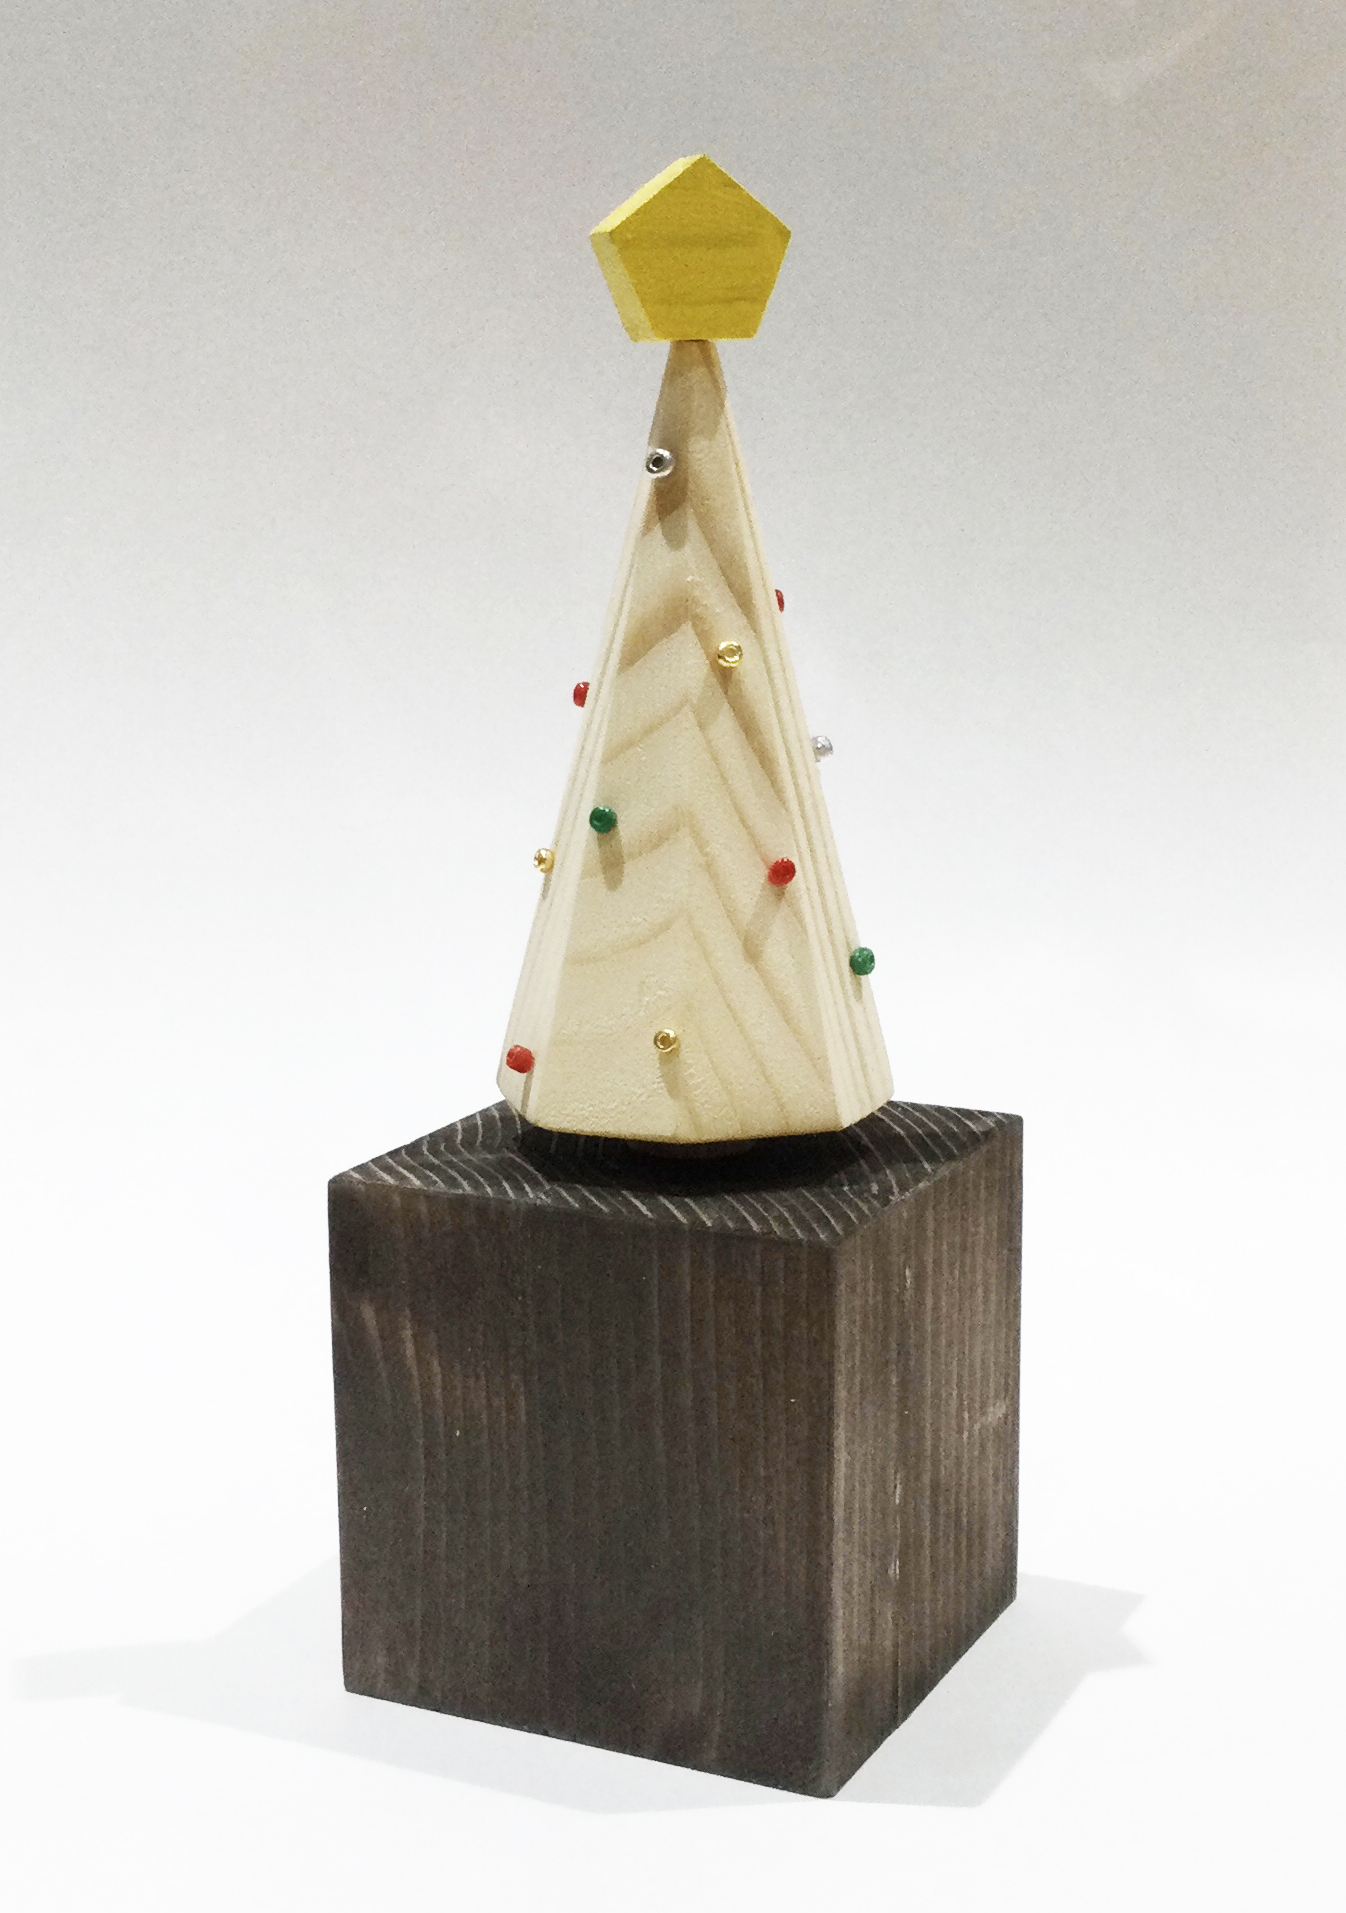 【終了しました】《ワークショップ》 「木のクリスマスツリーオルゴールを作ろう！」11/25(土)